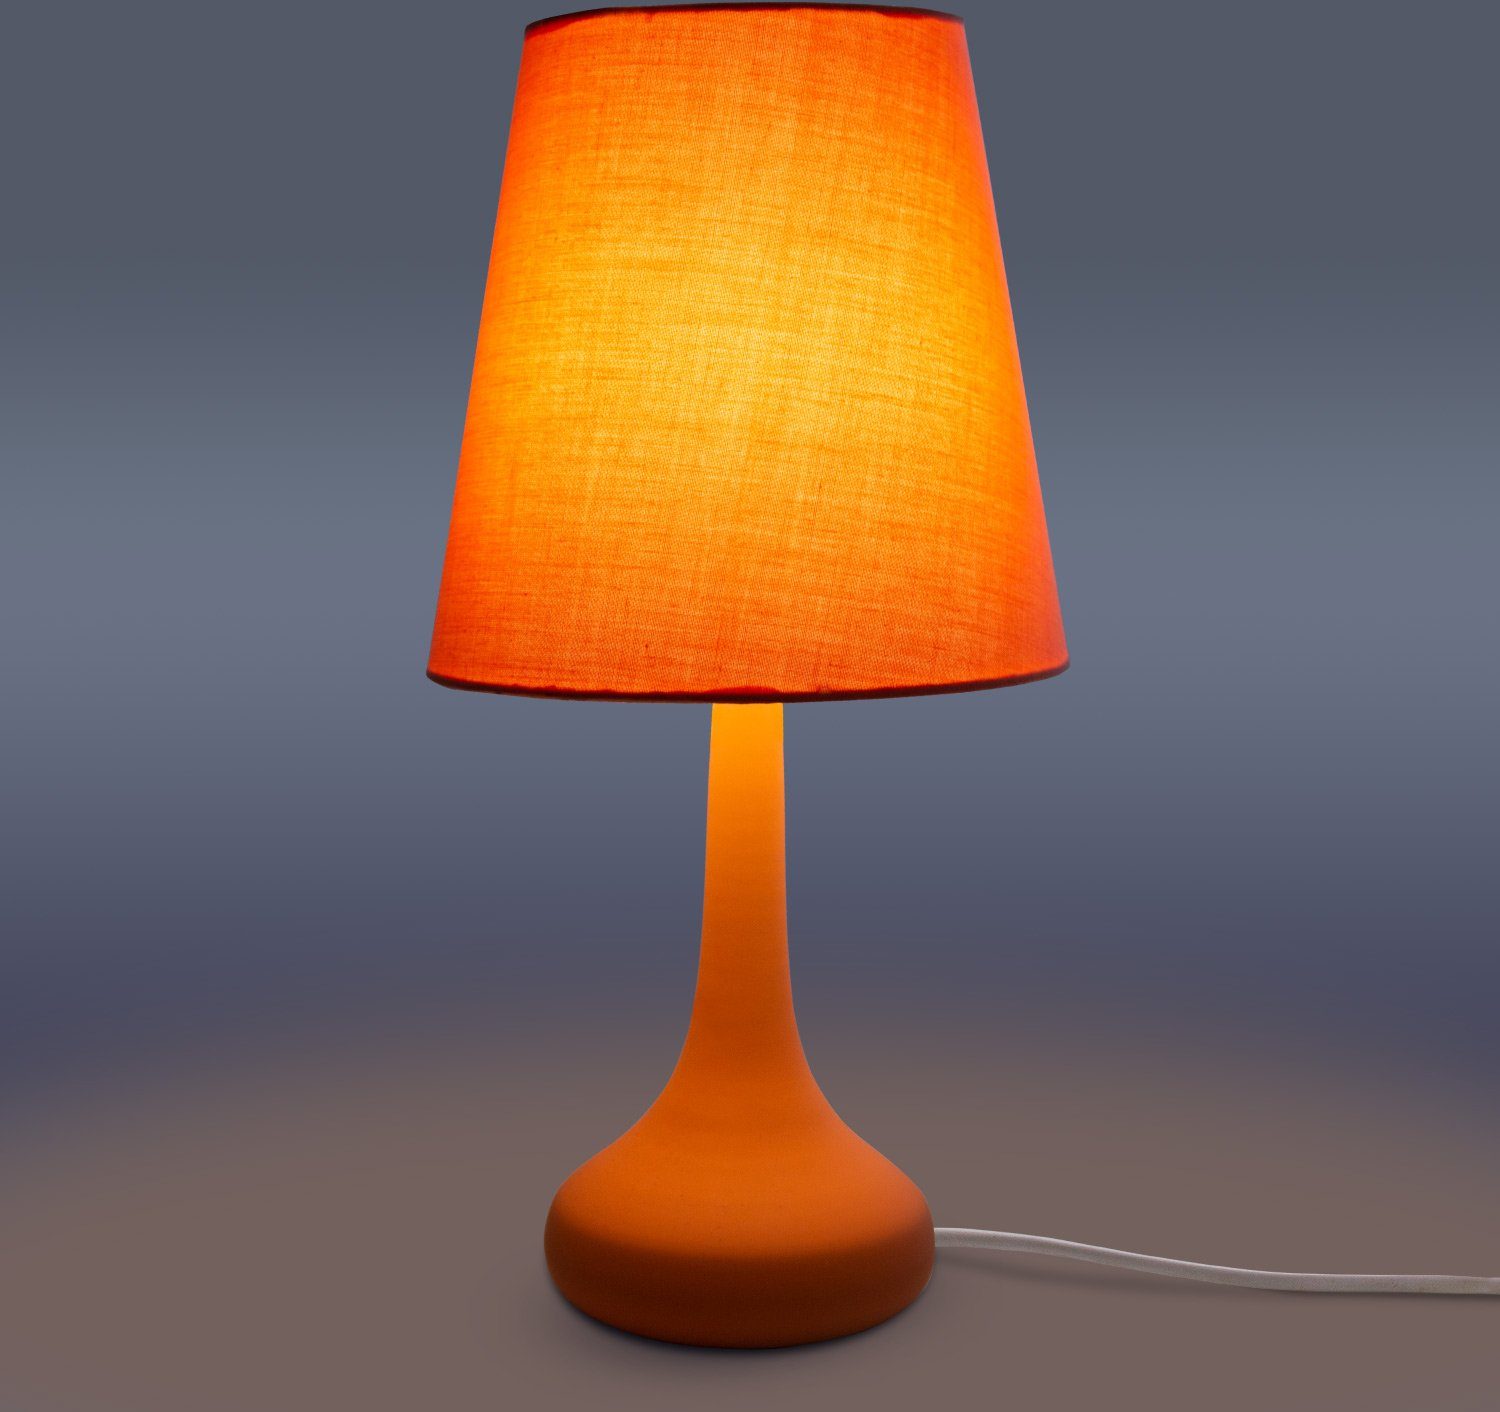 Tischleuchte Paco Für Wohnzimmer orange Home ohne Kinderzimmer Leuchtmittel, E14 u. LED Lampe, HELA, Modern Tischleuchte